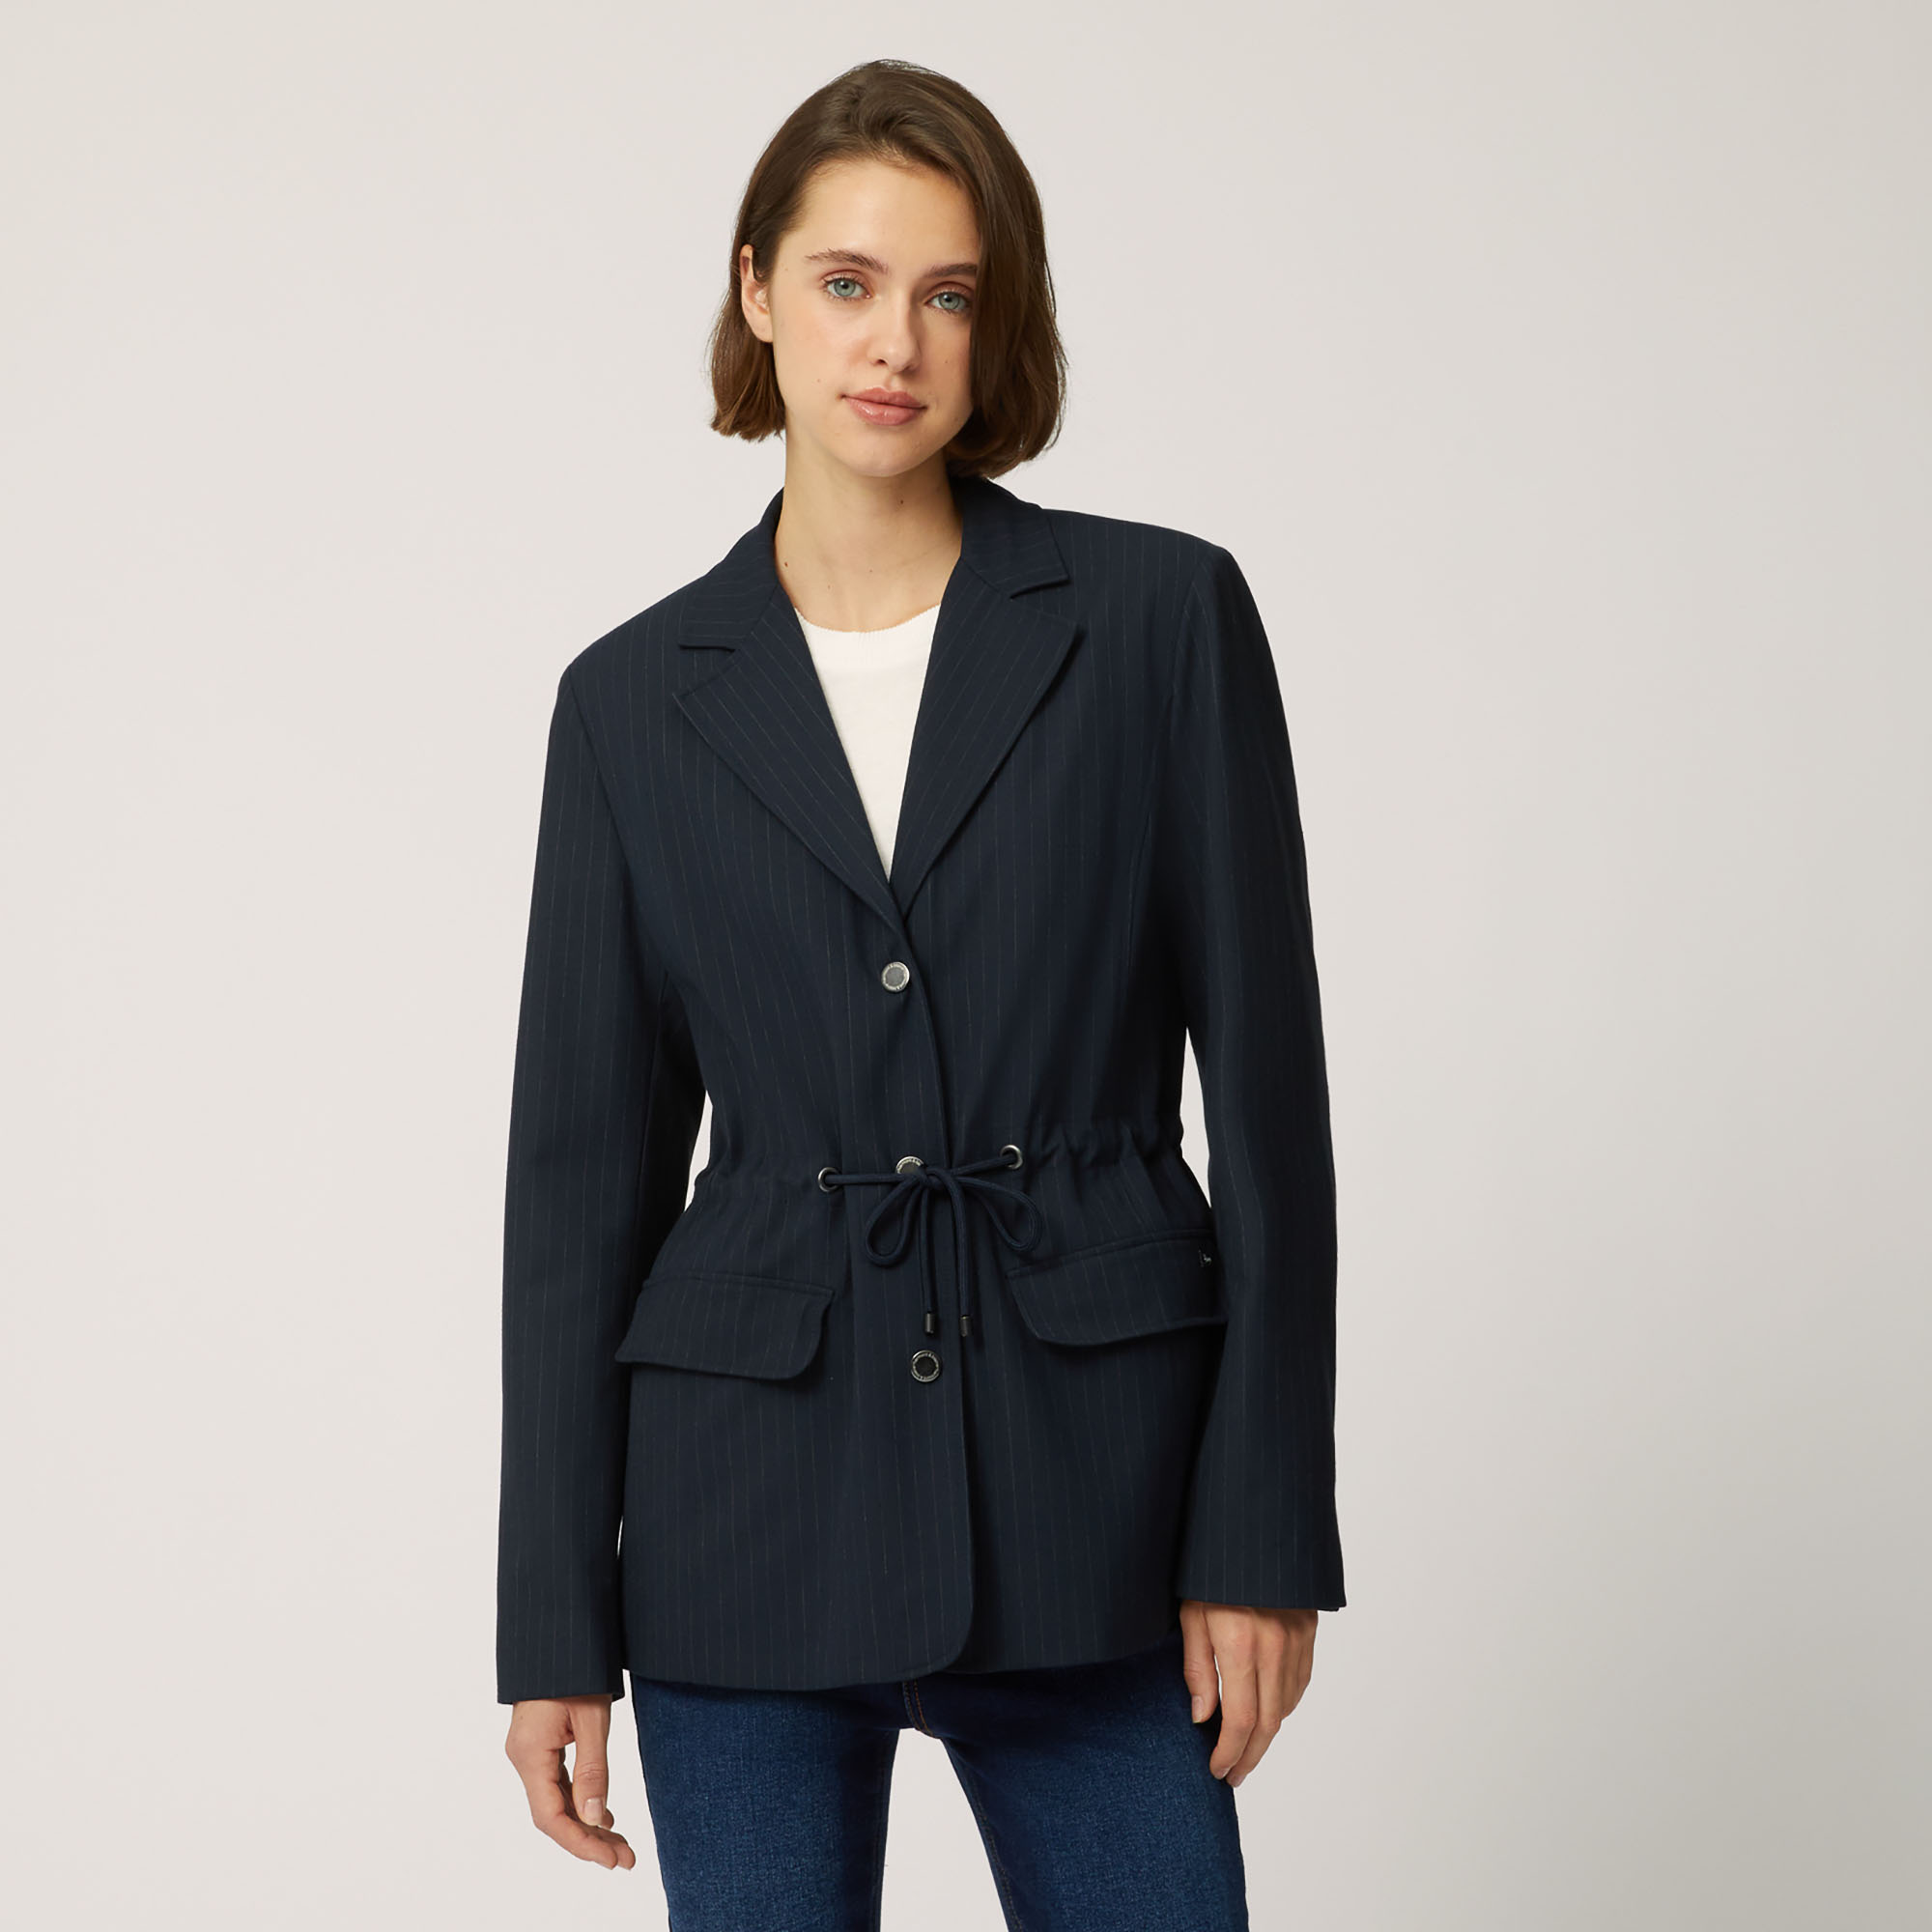 Cardigan-Style Jacket With Drawstring, Blue, large image number 0